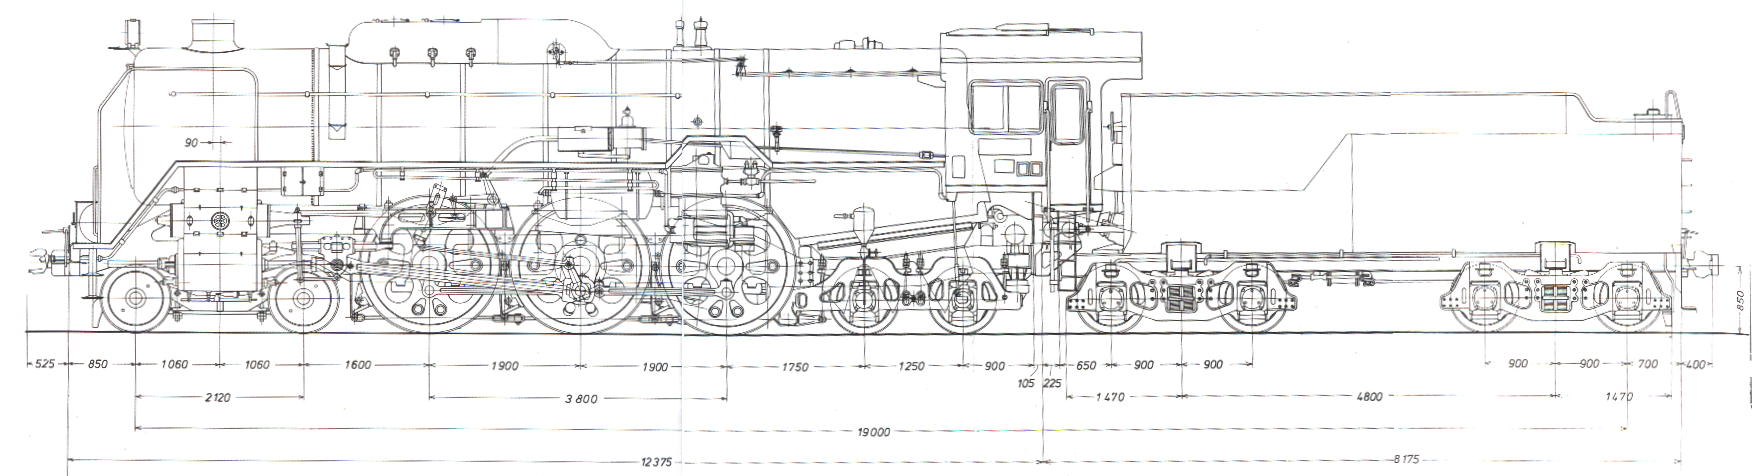 日本産】 図面 設計図 2枚 国鉄 鉄道 C63形 蒸気機関車 SL - 鉄道 